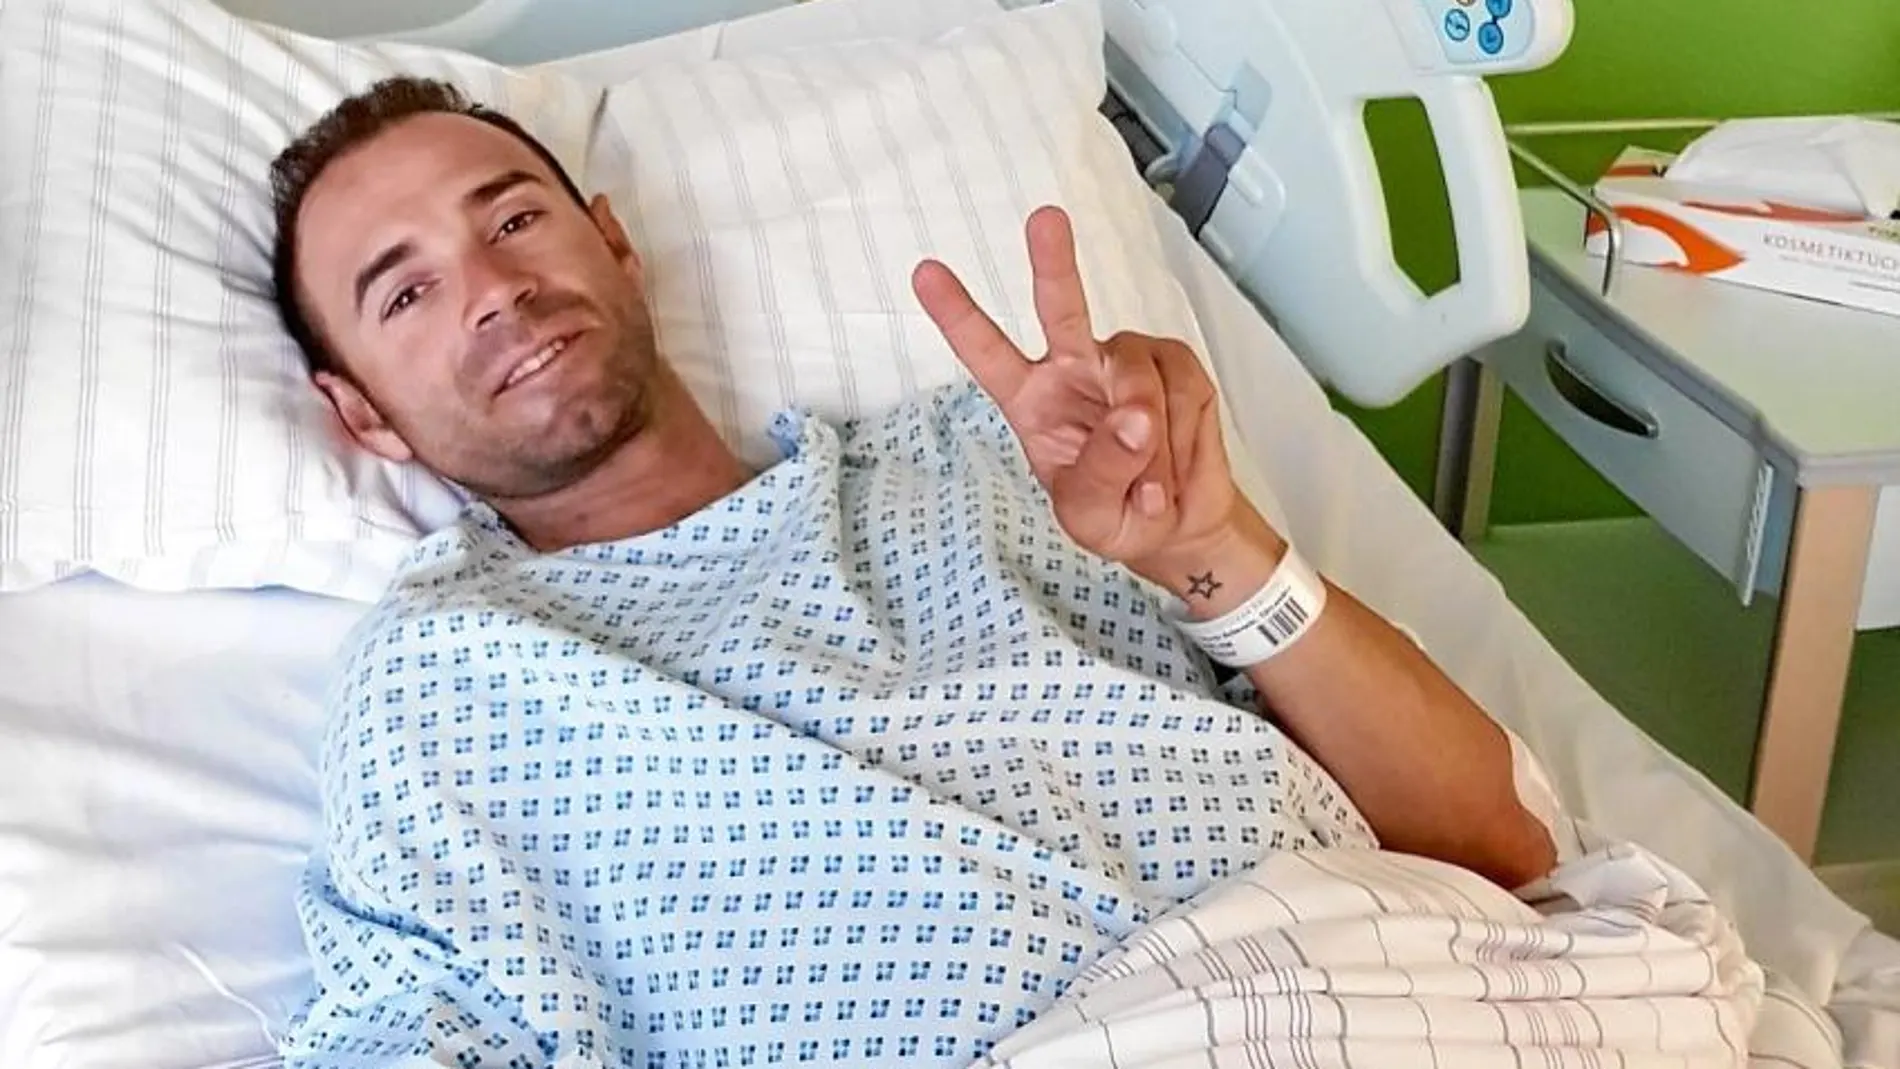 Valverde hace el signo de la victoria tras ser operado de una fractura en la rótula en Düsseldorf. El ciclista murciano se recupera bien.